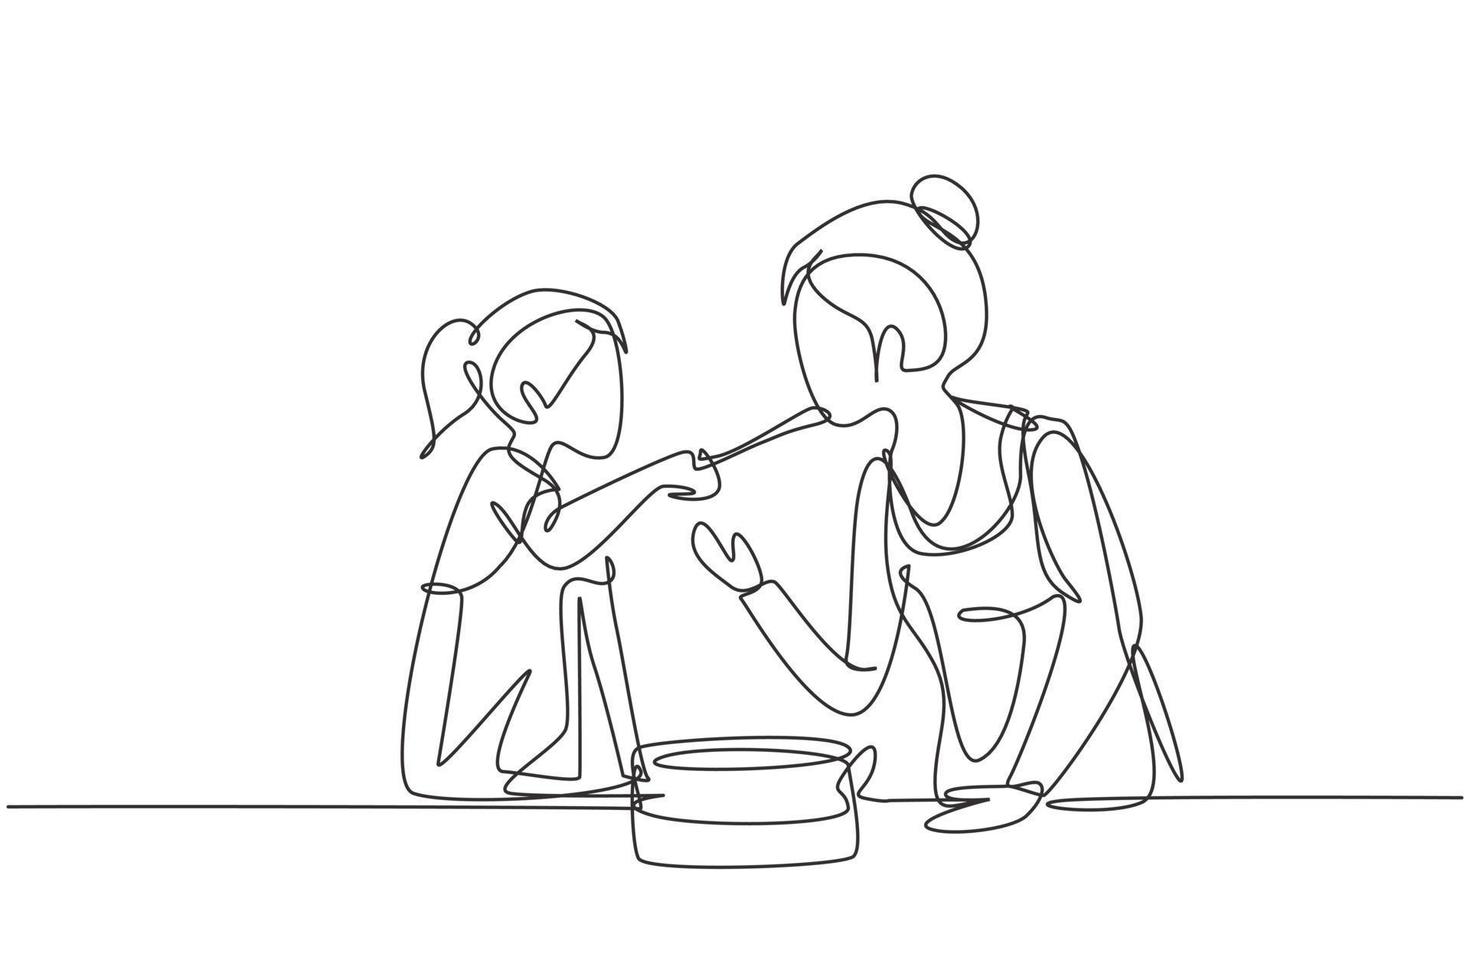 enkele lijntekening gelukkige moeder die voedsel proeft dat door haar mooie dochter wordt gegeven. samen koken voor de lunch in de gezellige keuken thuis. moderne doorlopende lijn tekenen ontwerp grafische vectorillustratie vector